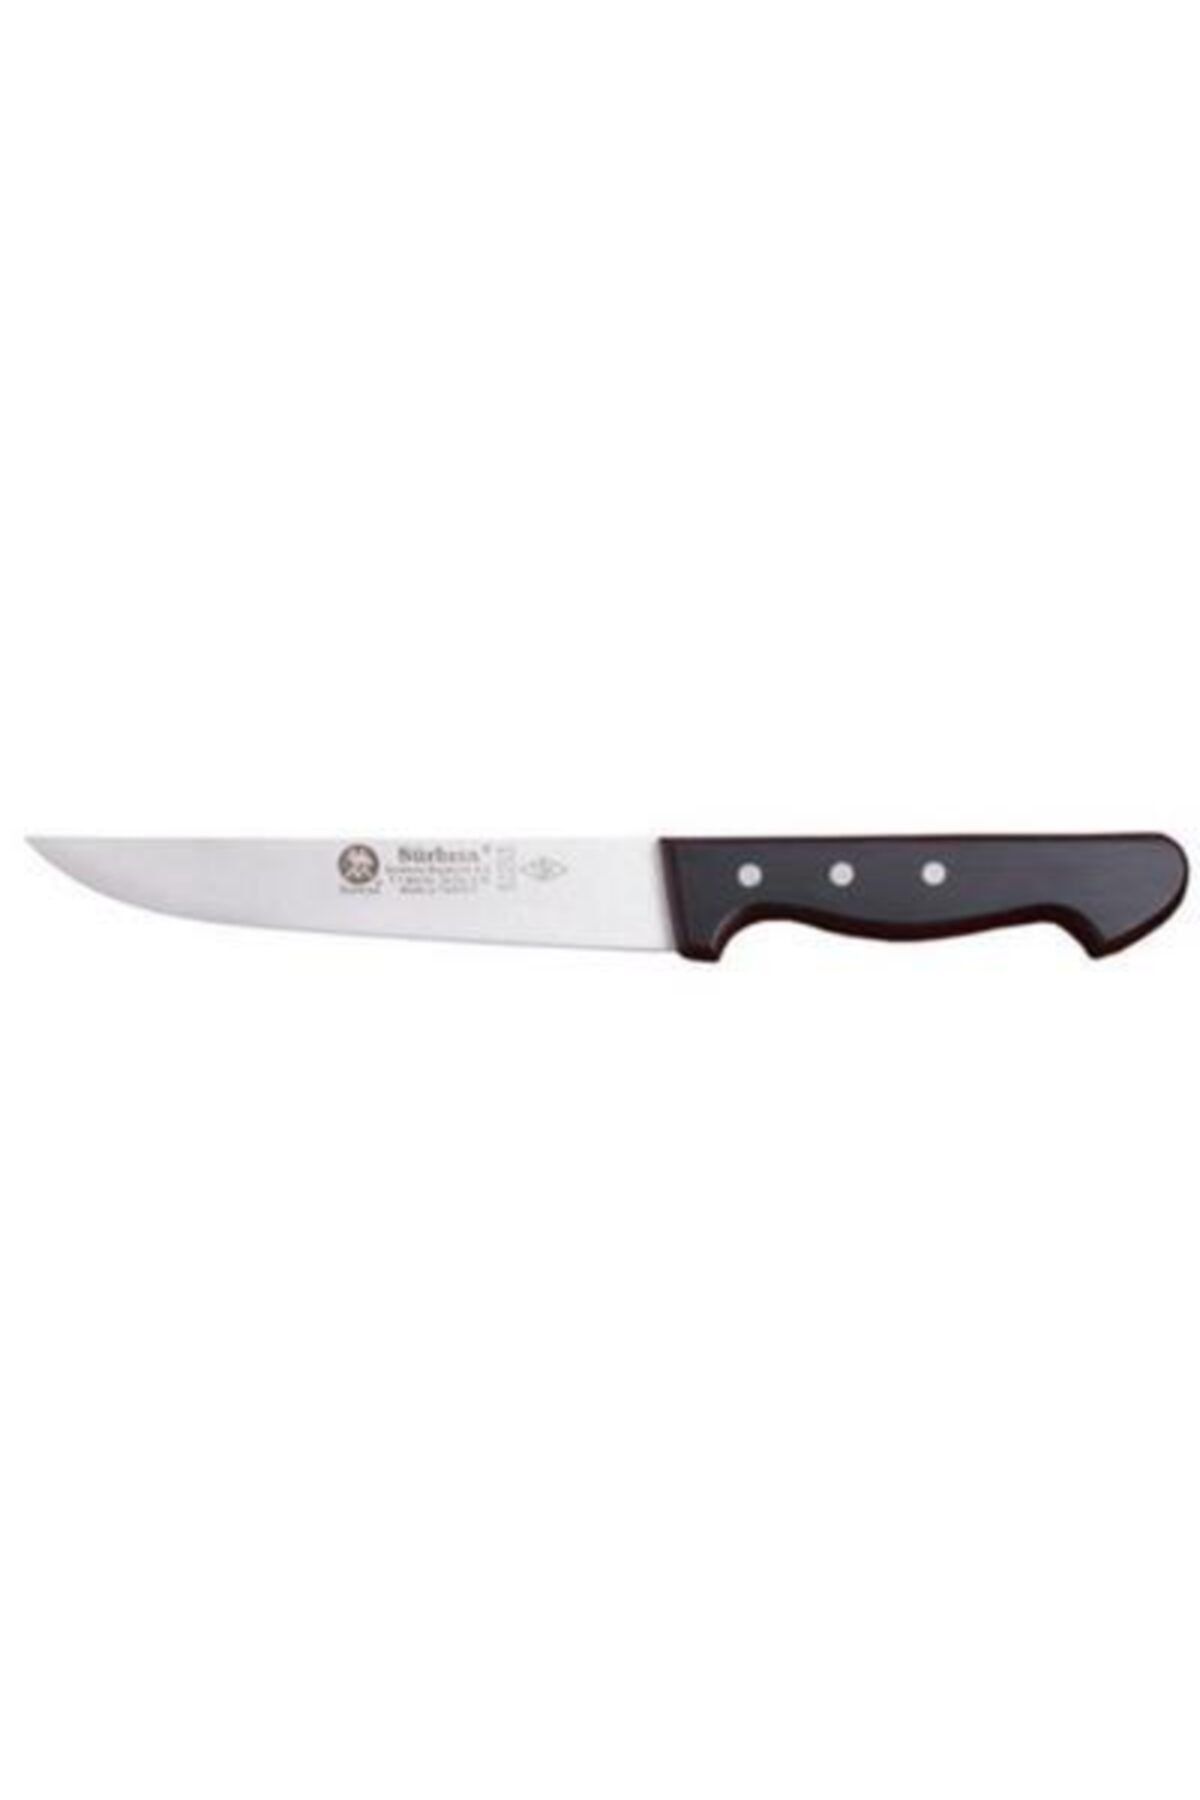 Sürbisa Pimli Kasap Bıçağı 23cm 61050